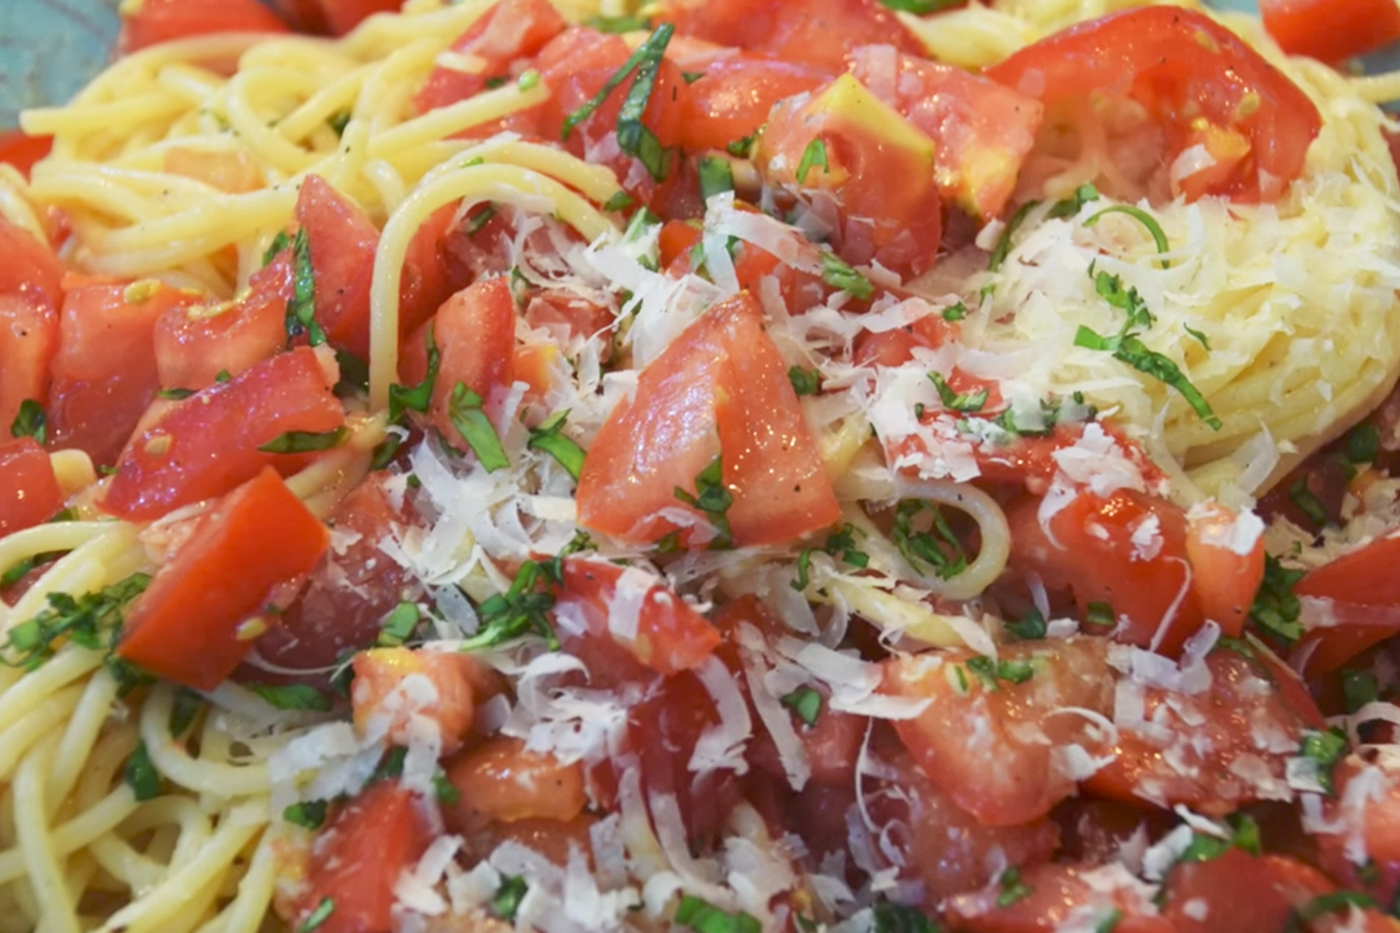 Some spaghetti. Cook Italia Chopped Tomatoes.